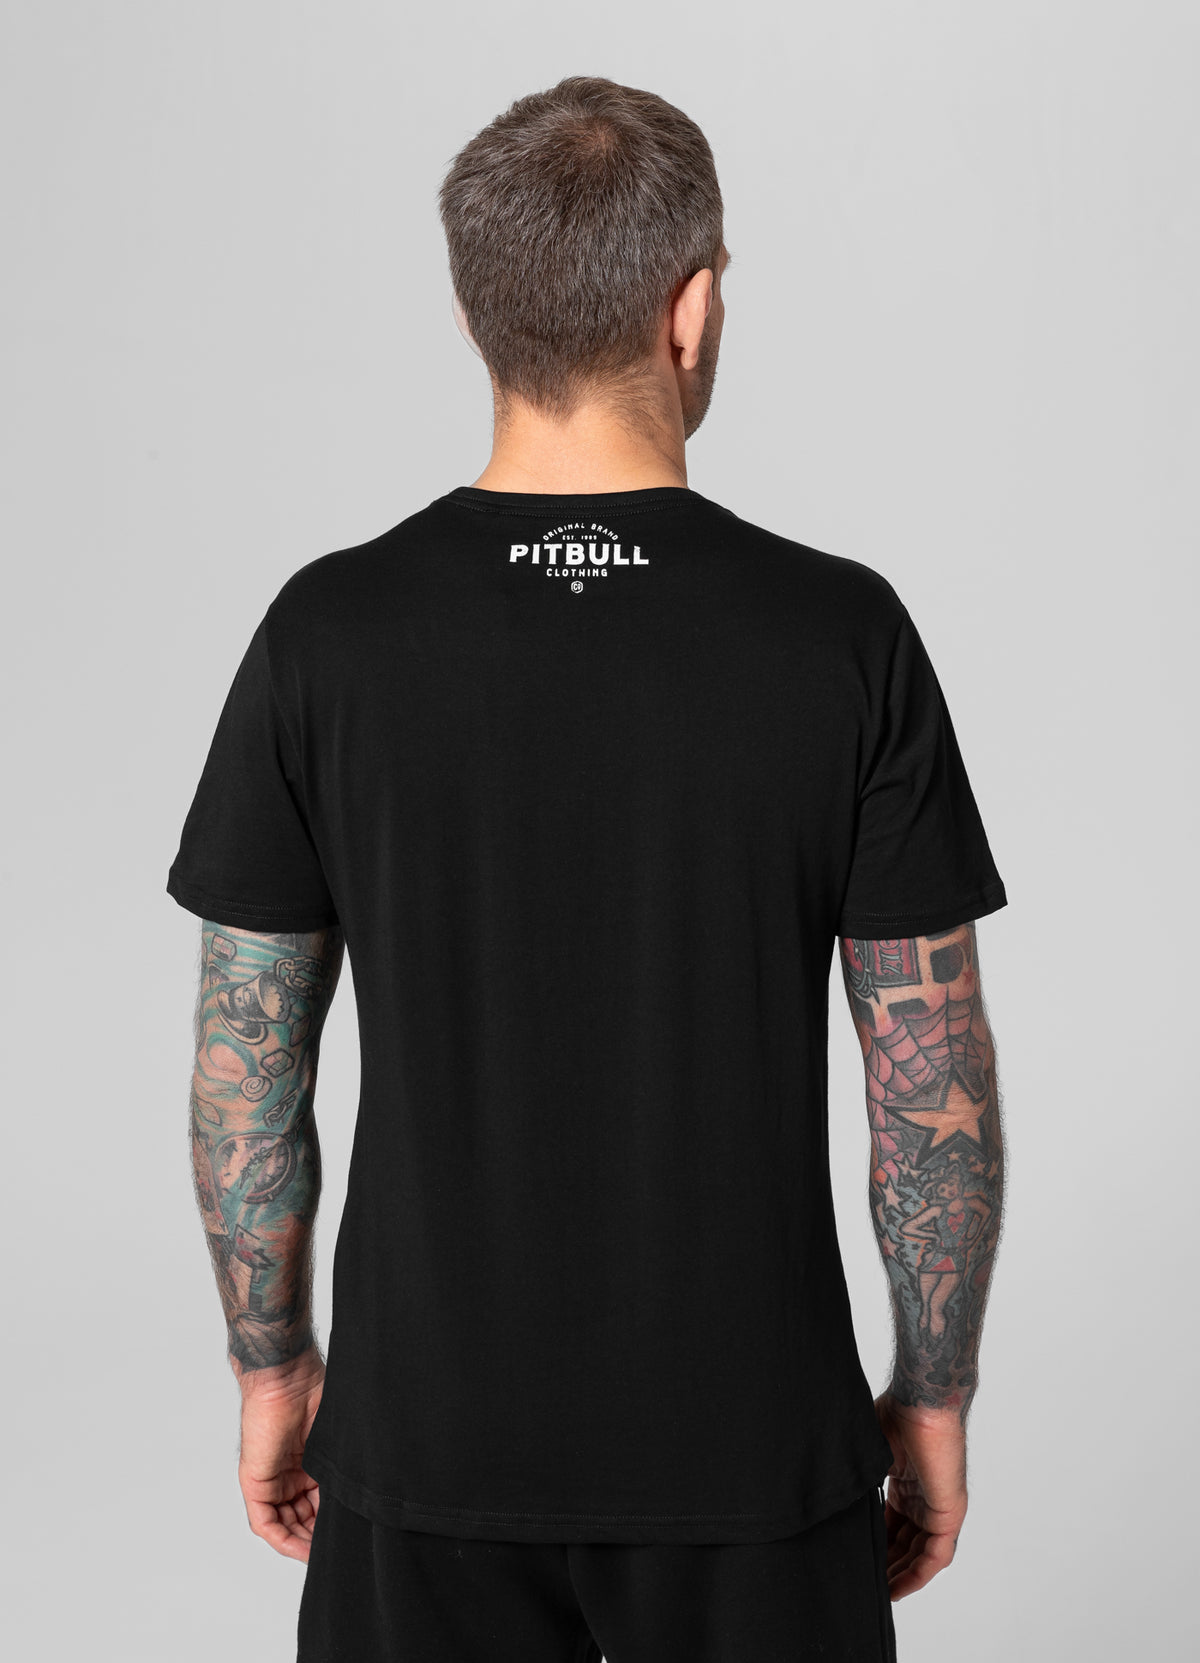 PITBULL CO. Black T-shirt